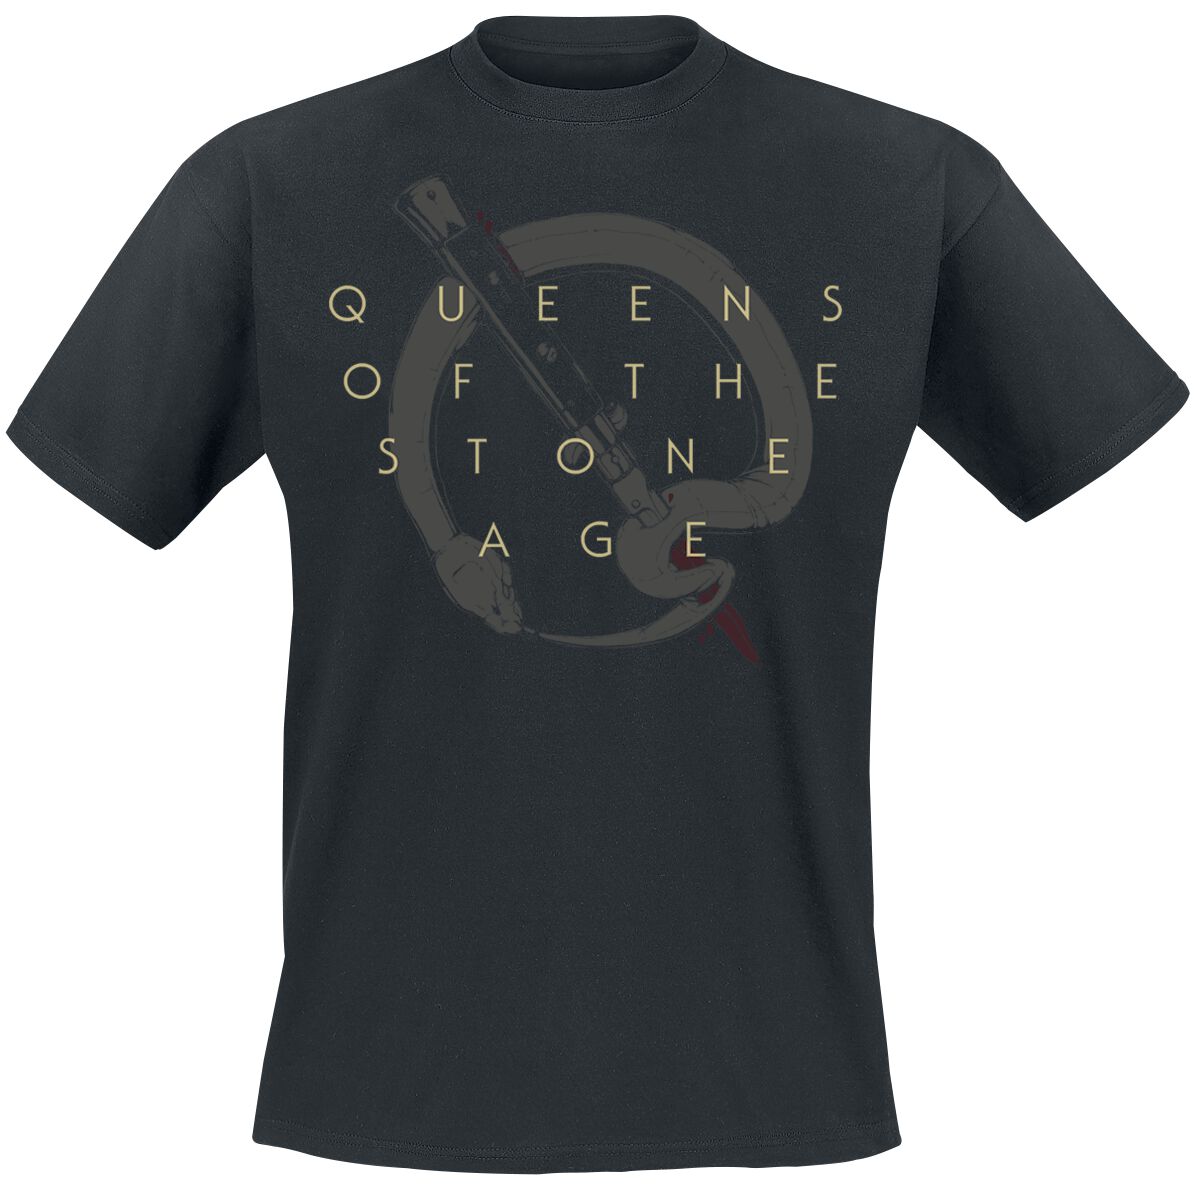 Queens Of The Stone Age T-Shirt - In Times New Roman - Bad Dog - S bis 3XL - für Männer - Größe M - schwarz  - Lizenziertes Merchandise!